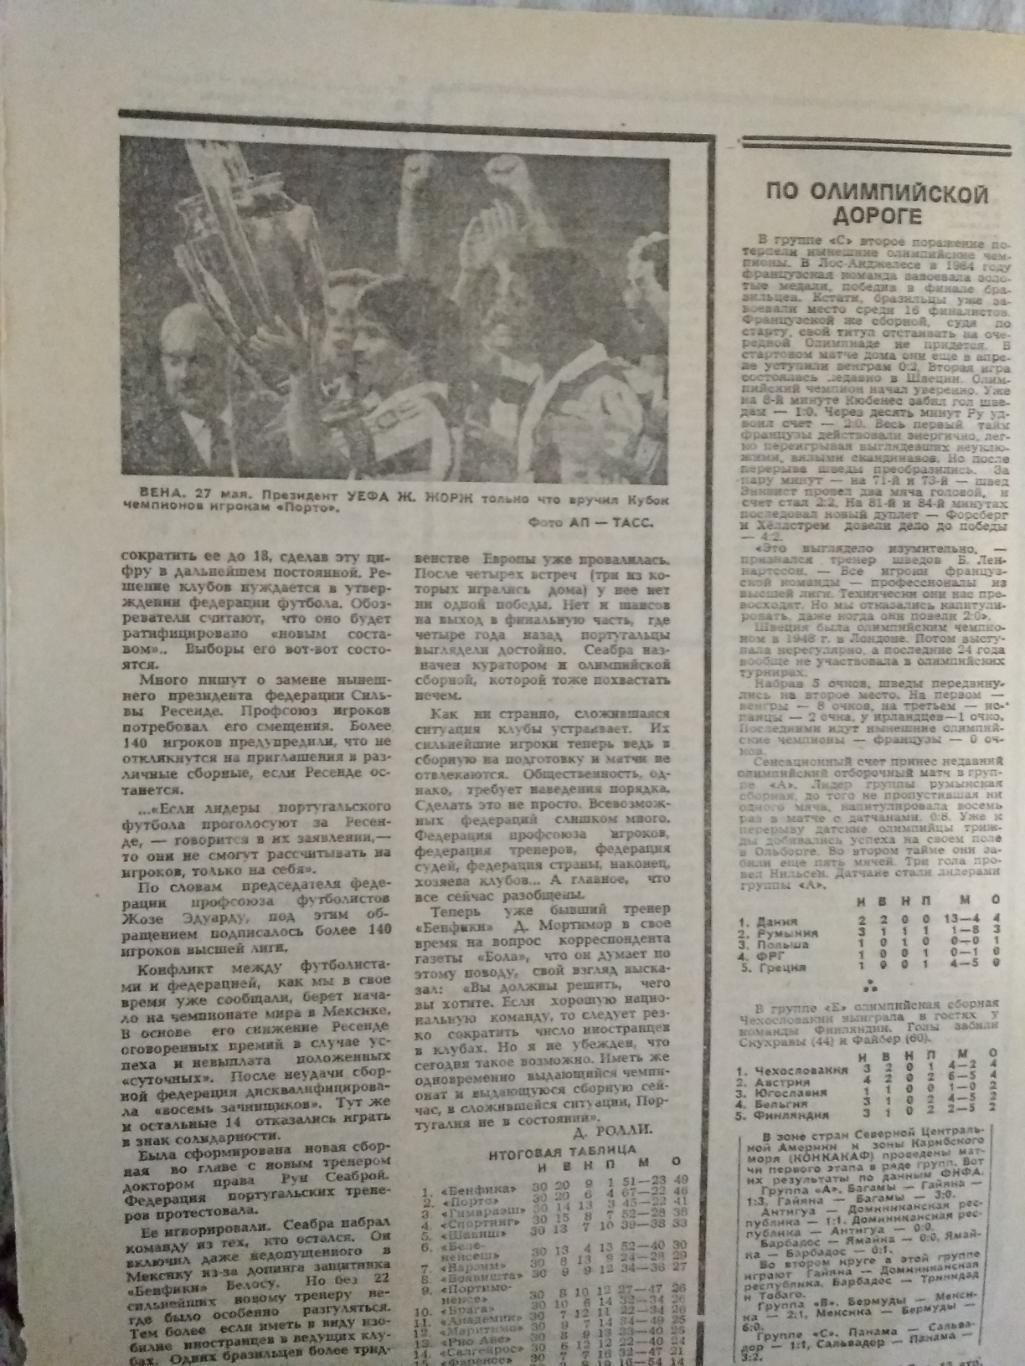 Статья.Футбол.Июньский телетайп.Футбол-Хоккей 1987 г. 1